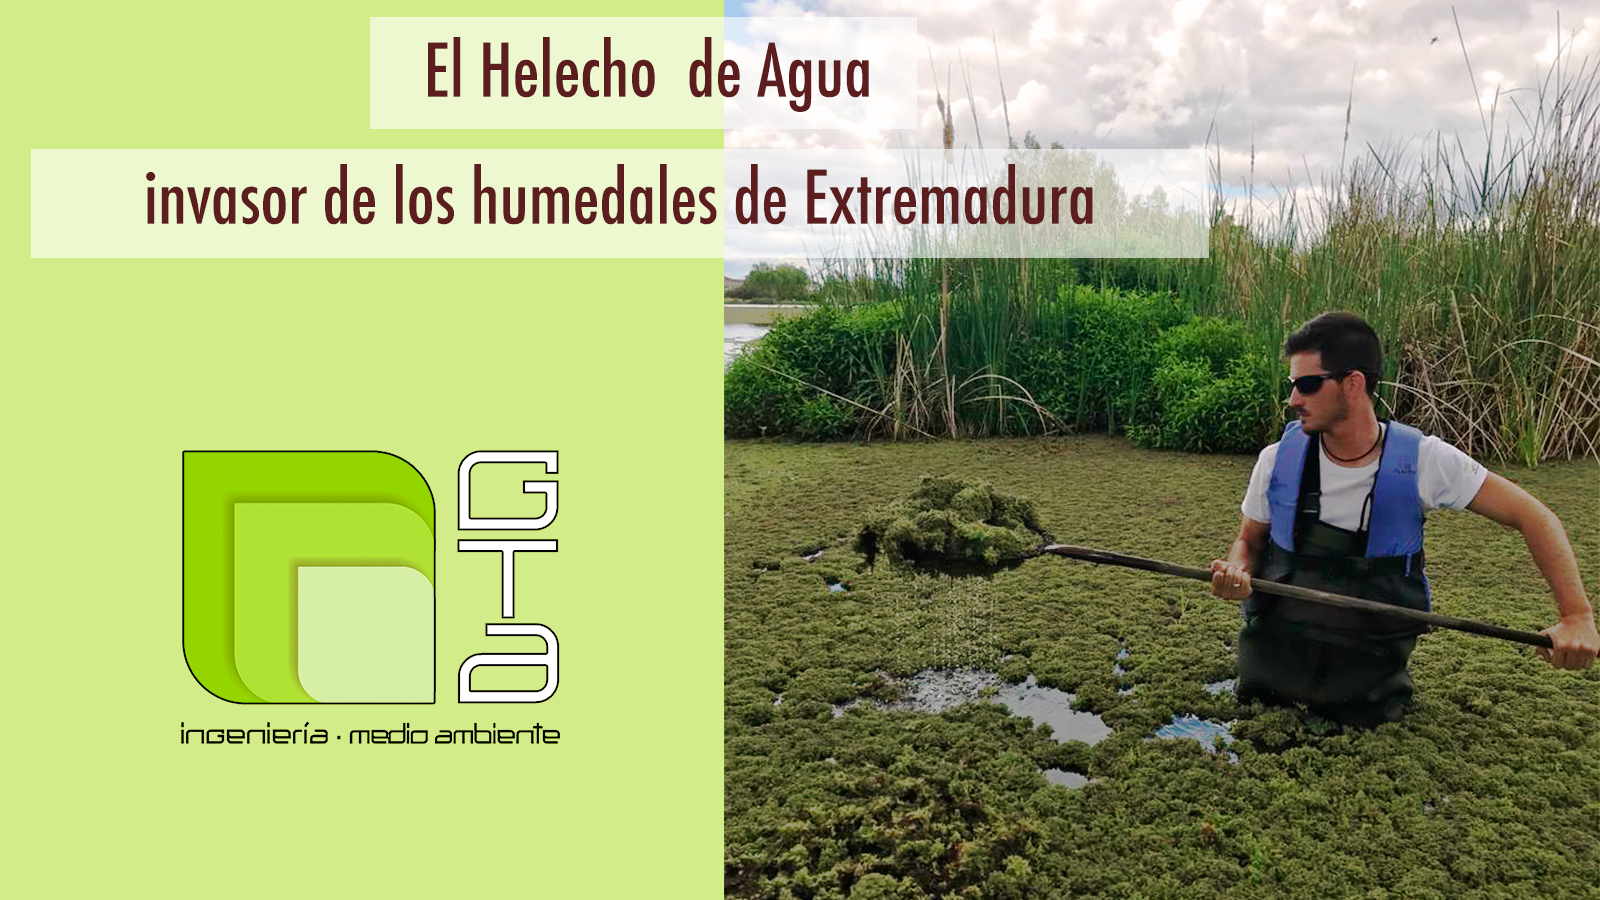 El Helecho de Agua invade los humedales de Extremadura